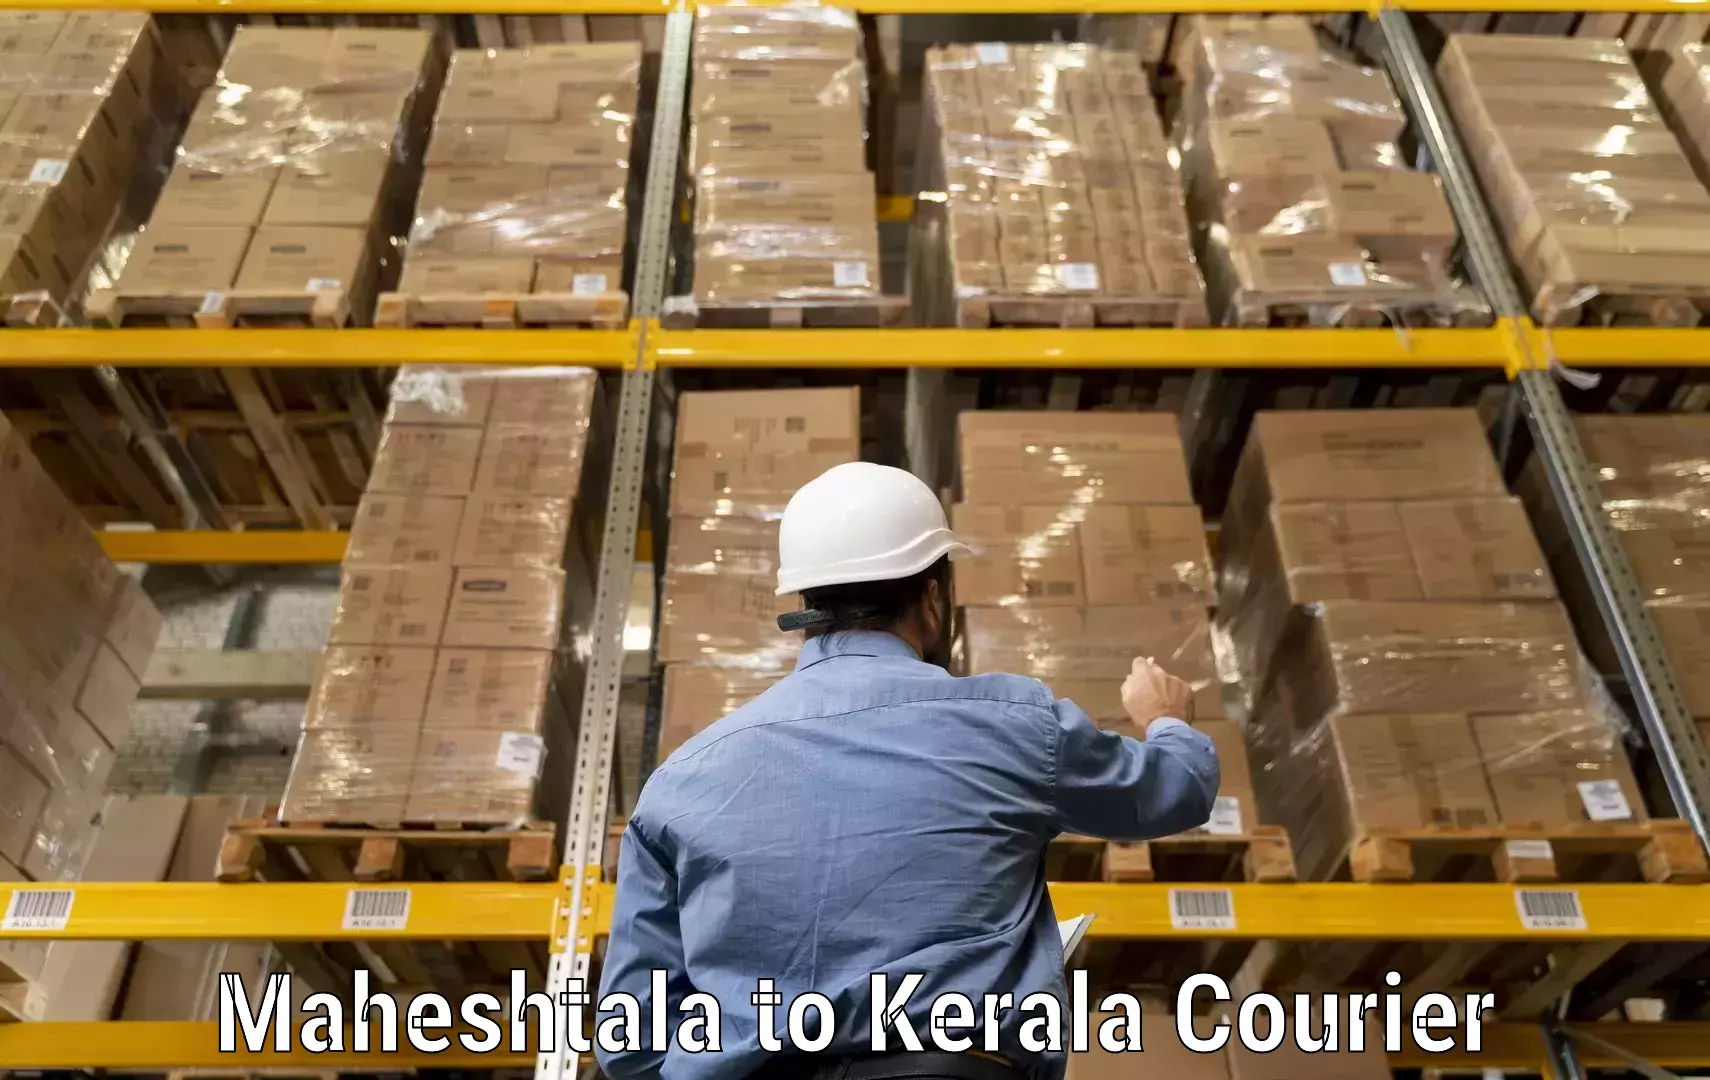 Reliable courier service Maheshtala to Mundakayam